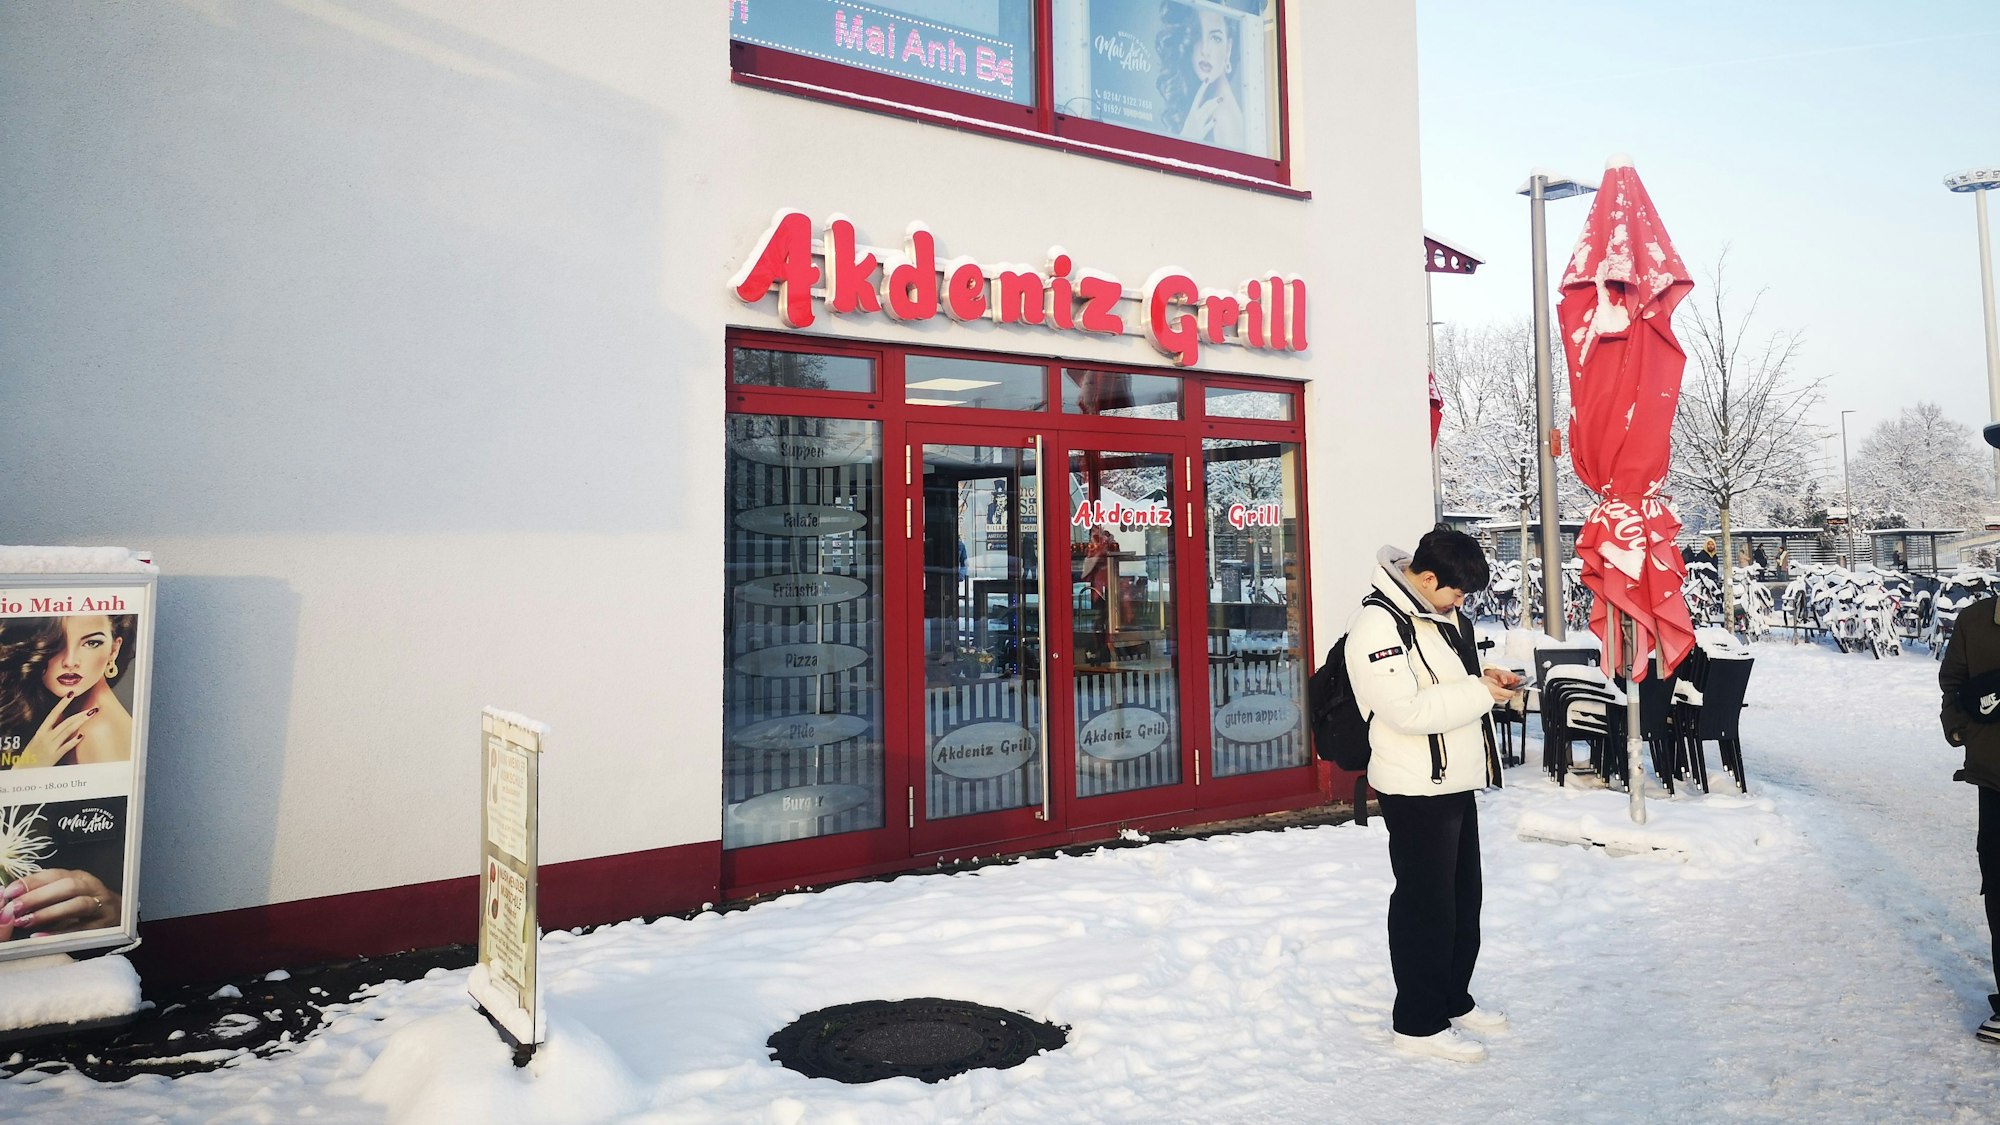 Der Akdeniz Grill in Leverkusen Mitte in der Außenansicht. Es liegt Schnee. Vor dem Restaurant schaut ein junger Mann auf sein Handy. Links unten im Bild befindet sich ein Werbeschild, oben rechts ein ausziehbarer Schirm.